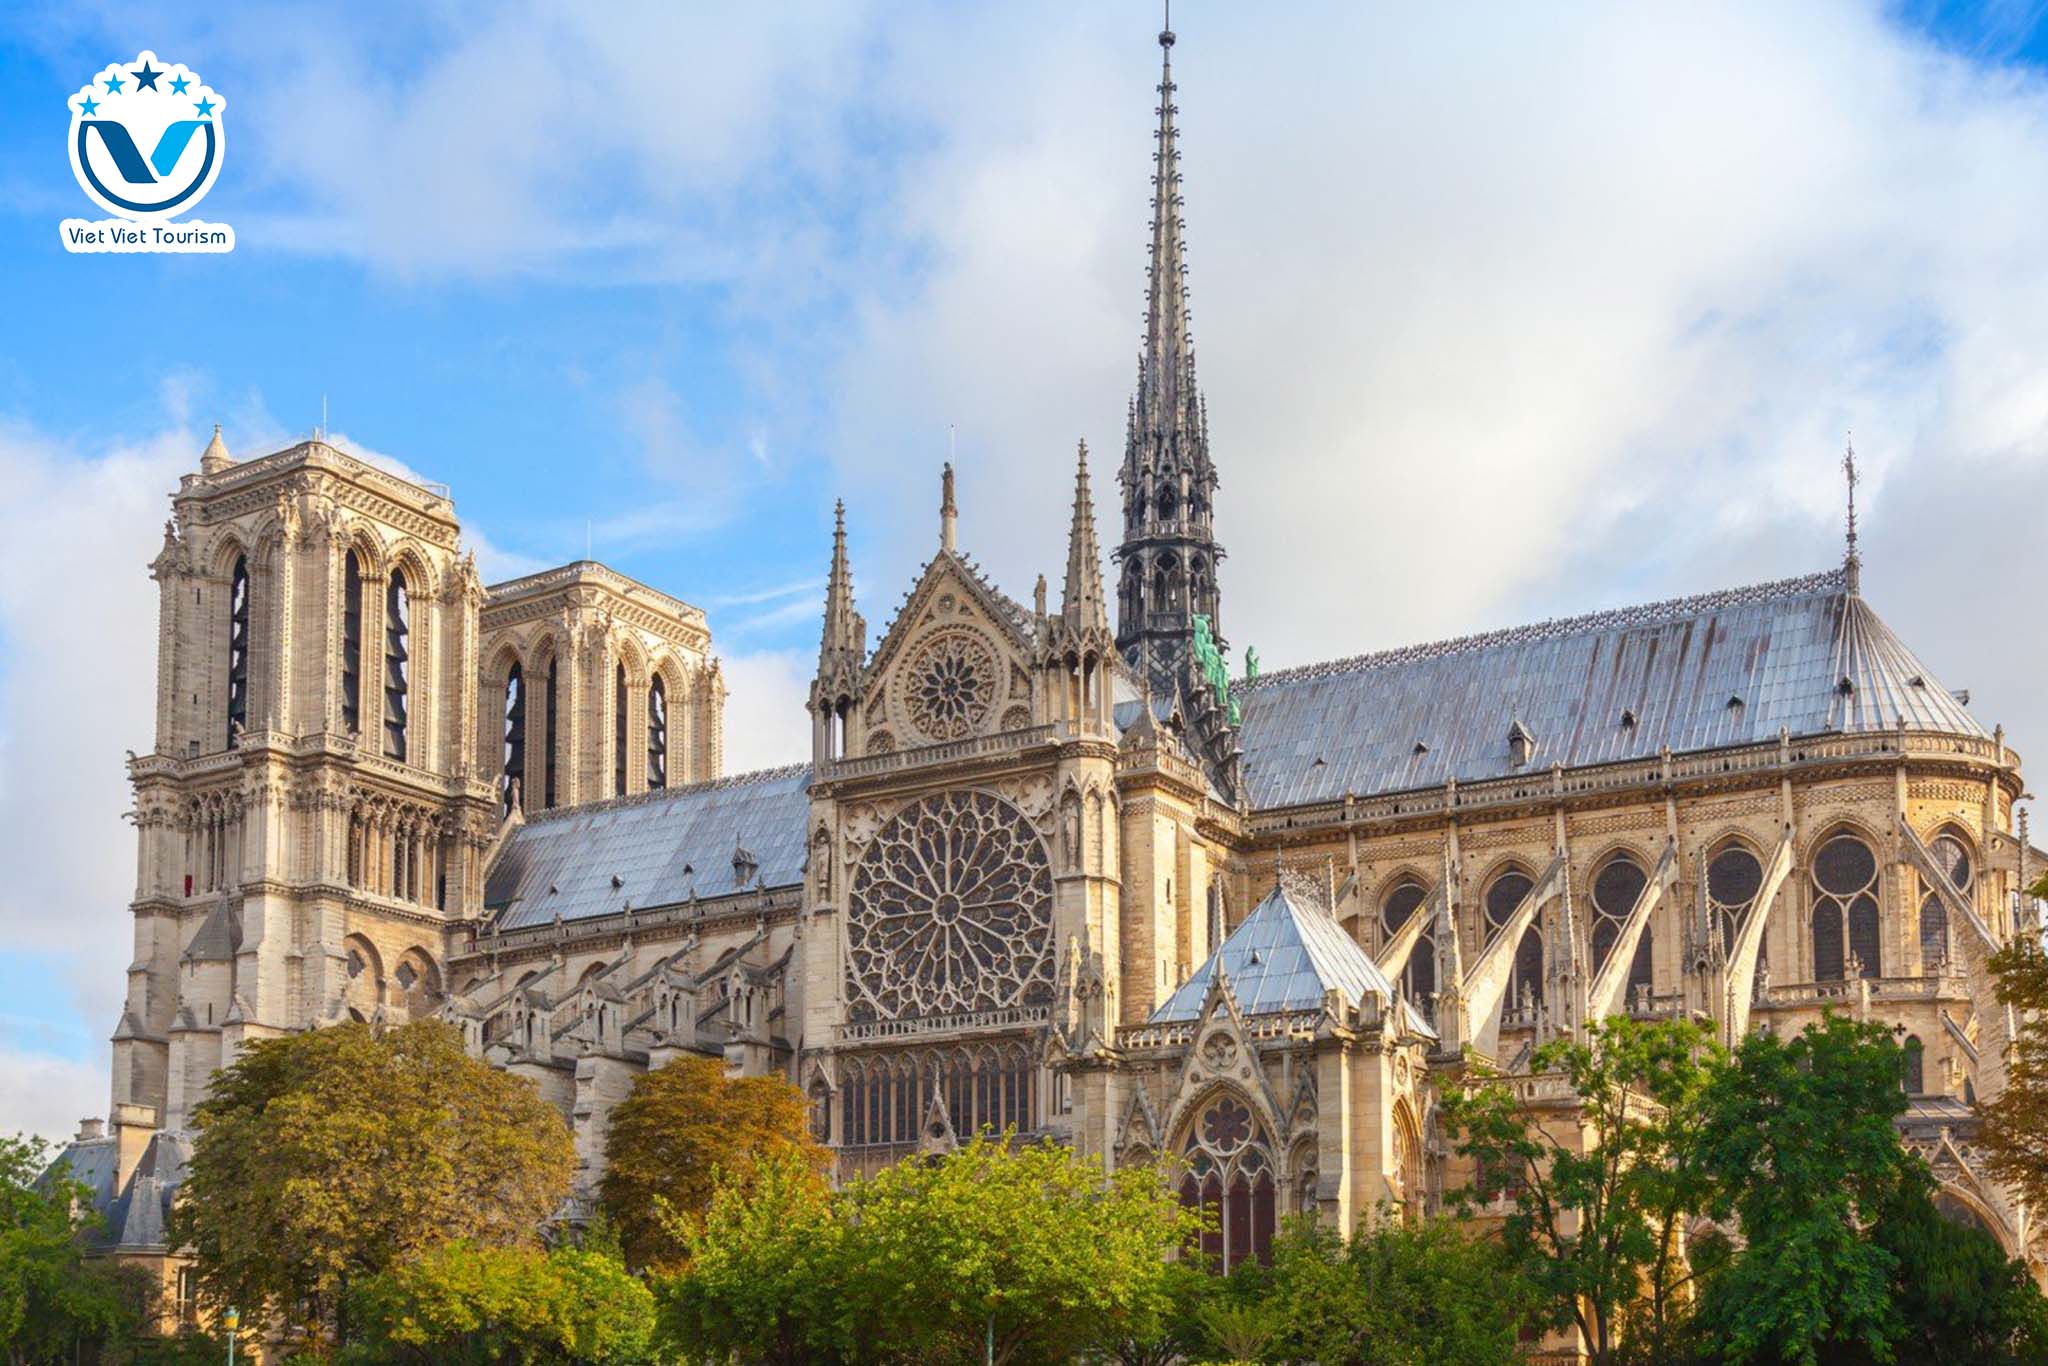 EU VVT Notre Dame de Paris